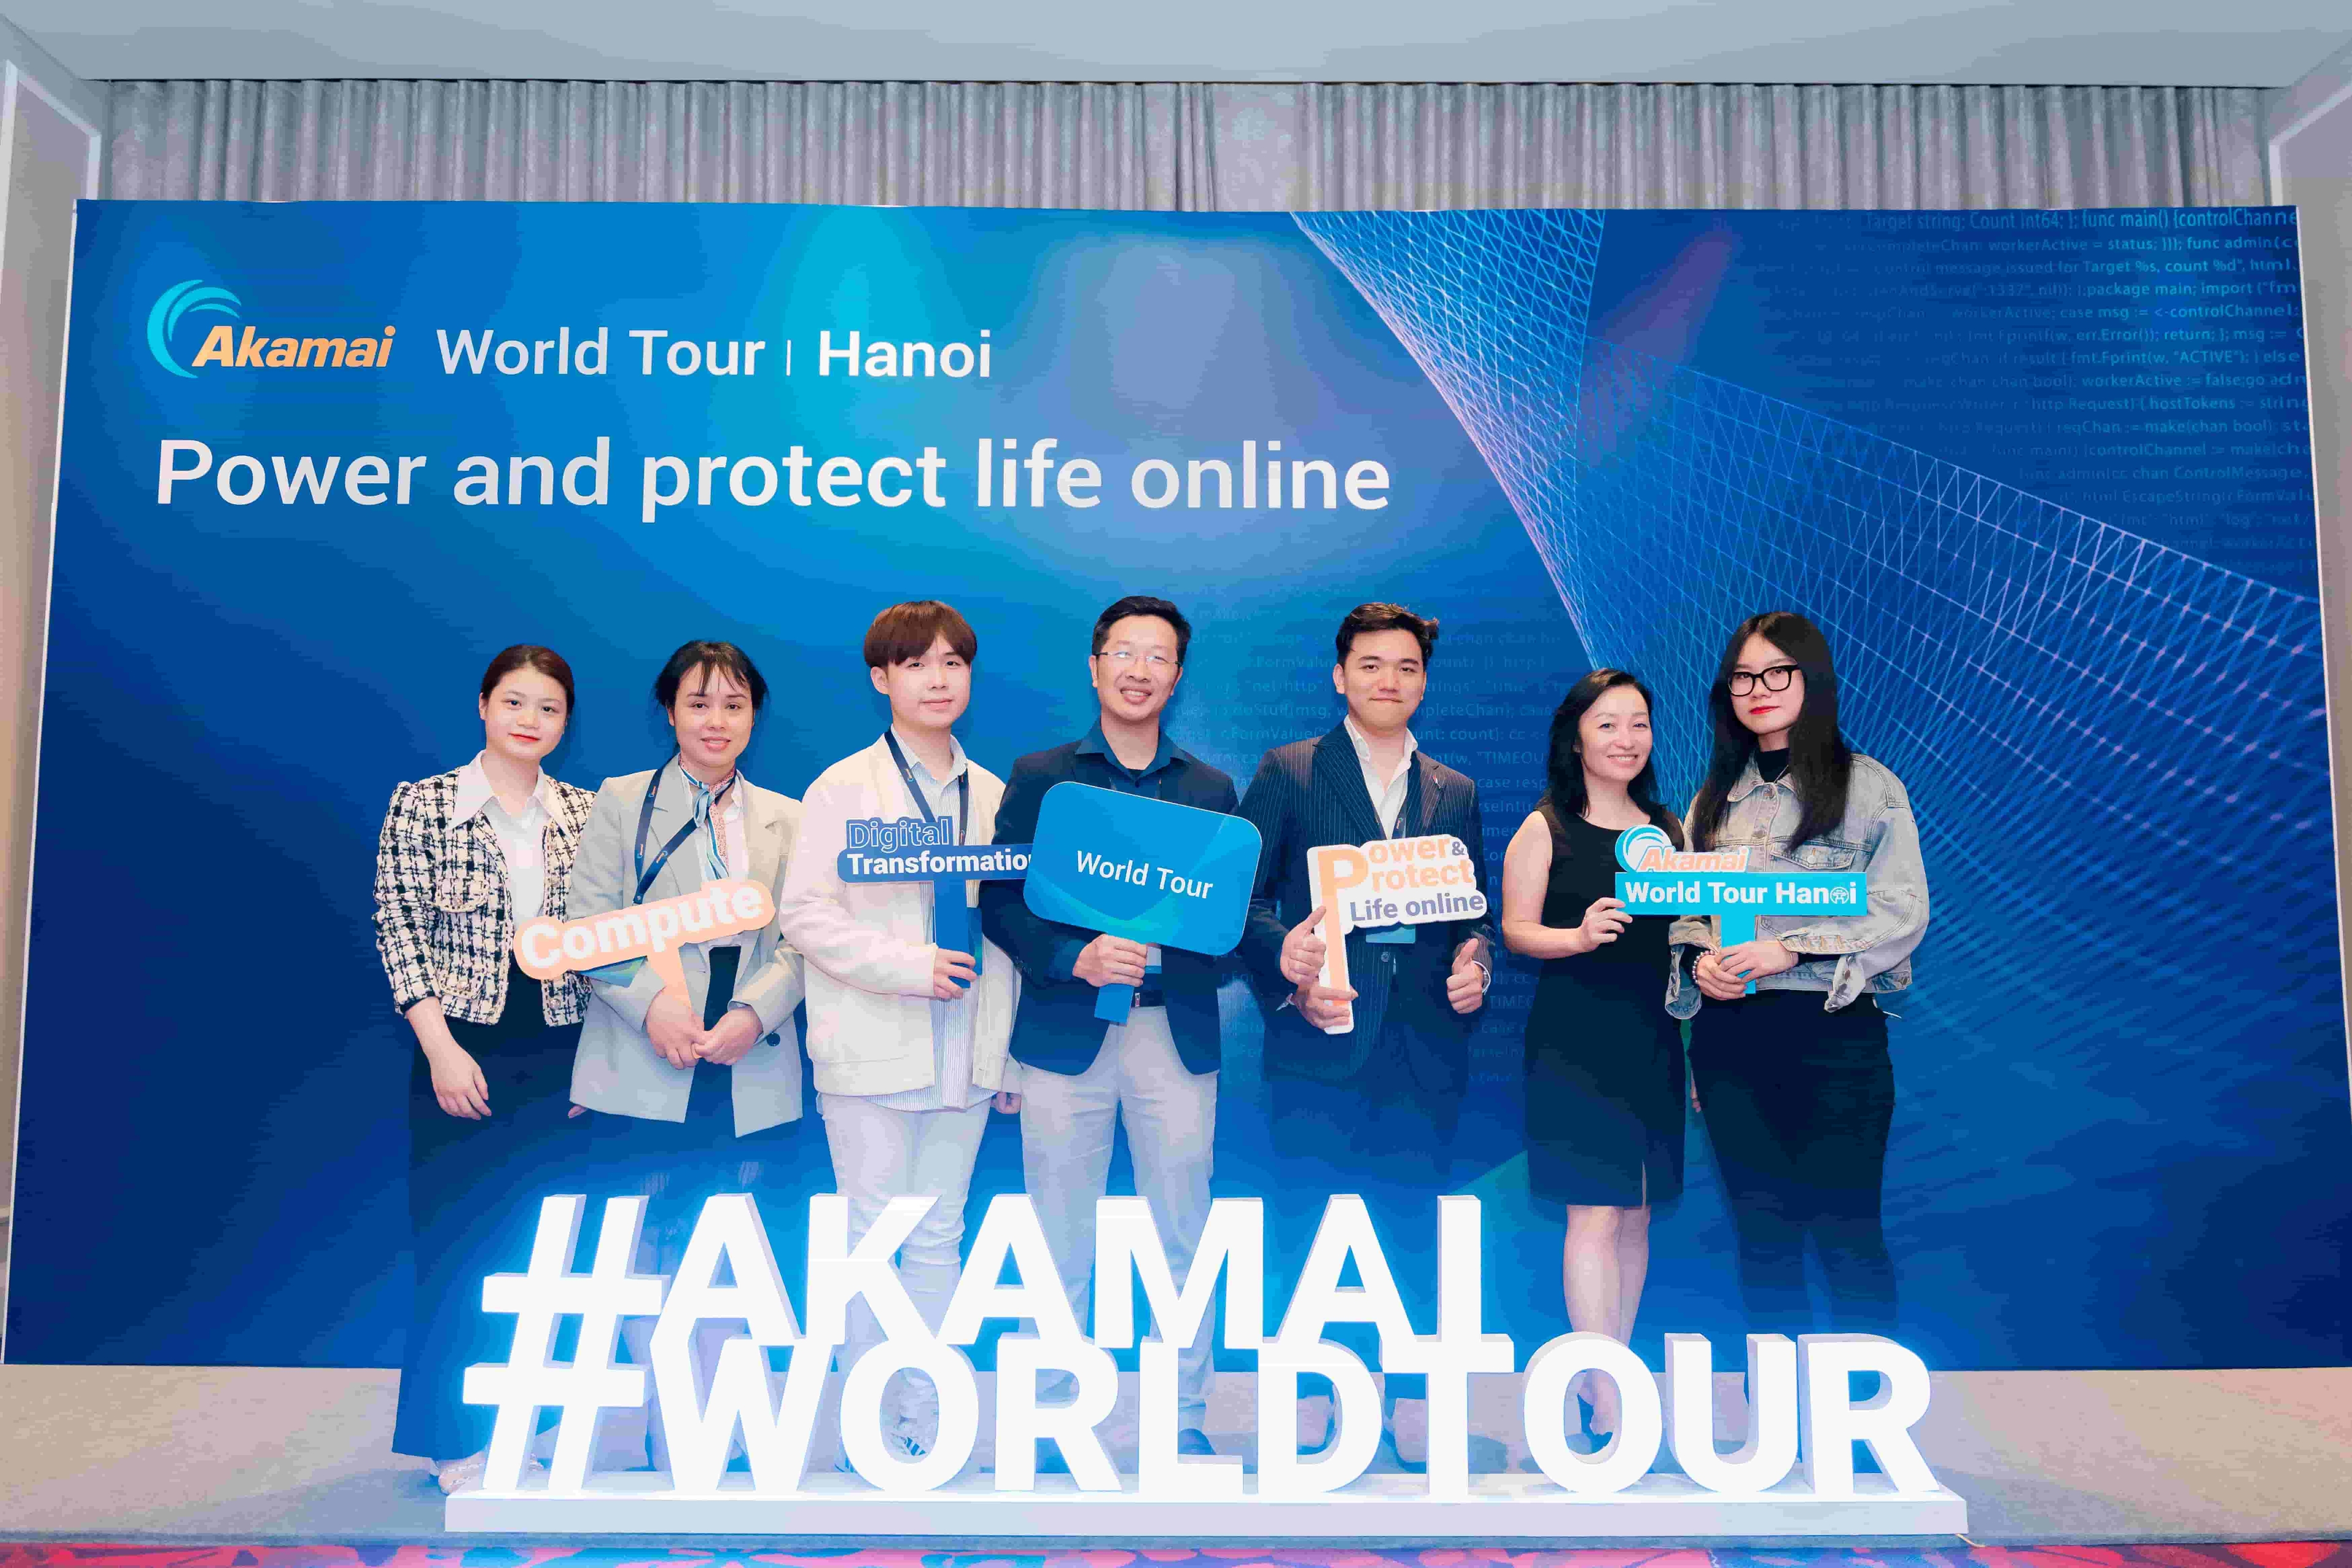 Sự kiện ra mắt: Akamai Worldtour in Hanoi